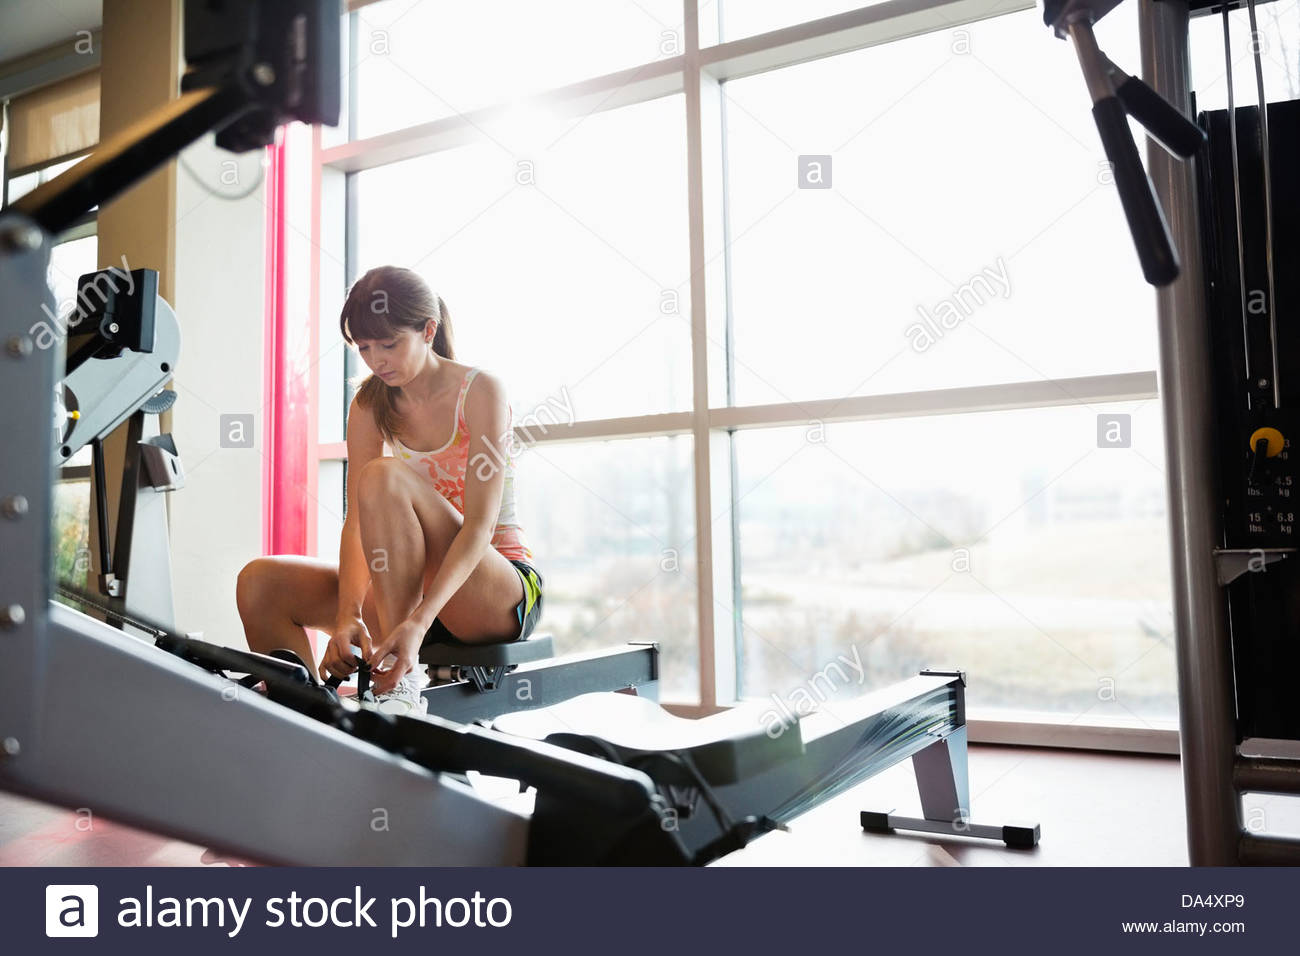 La donna si prepara a esercitarsi nel centro fitness Foto Stock